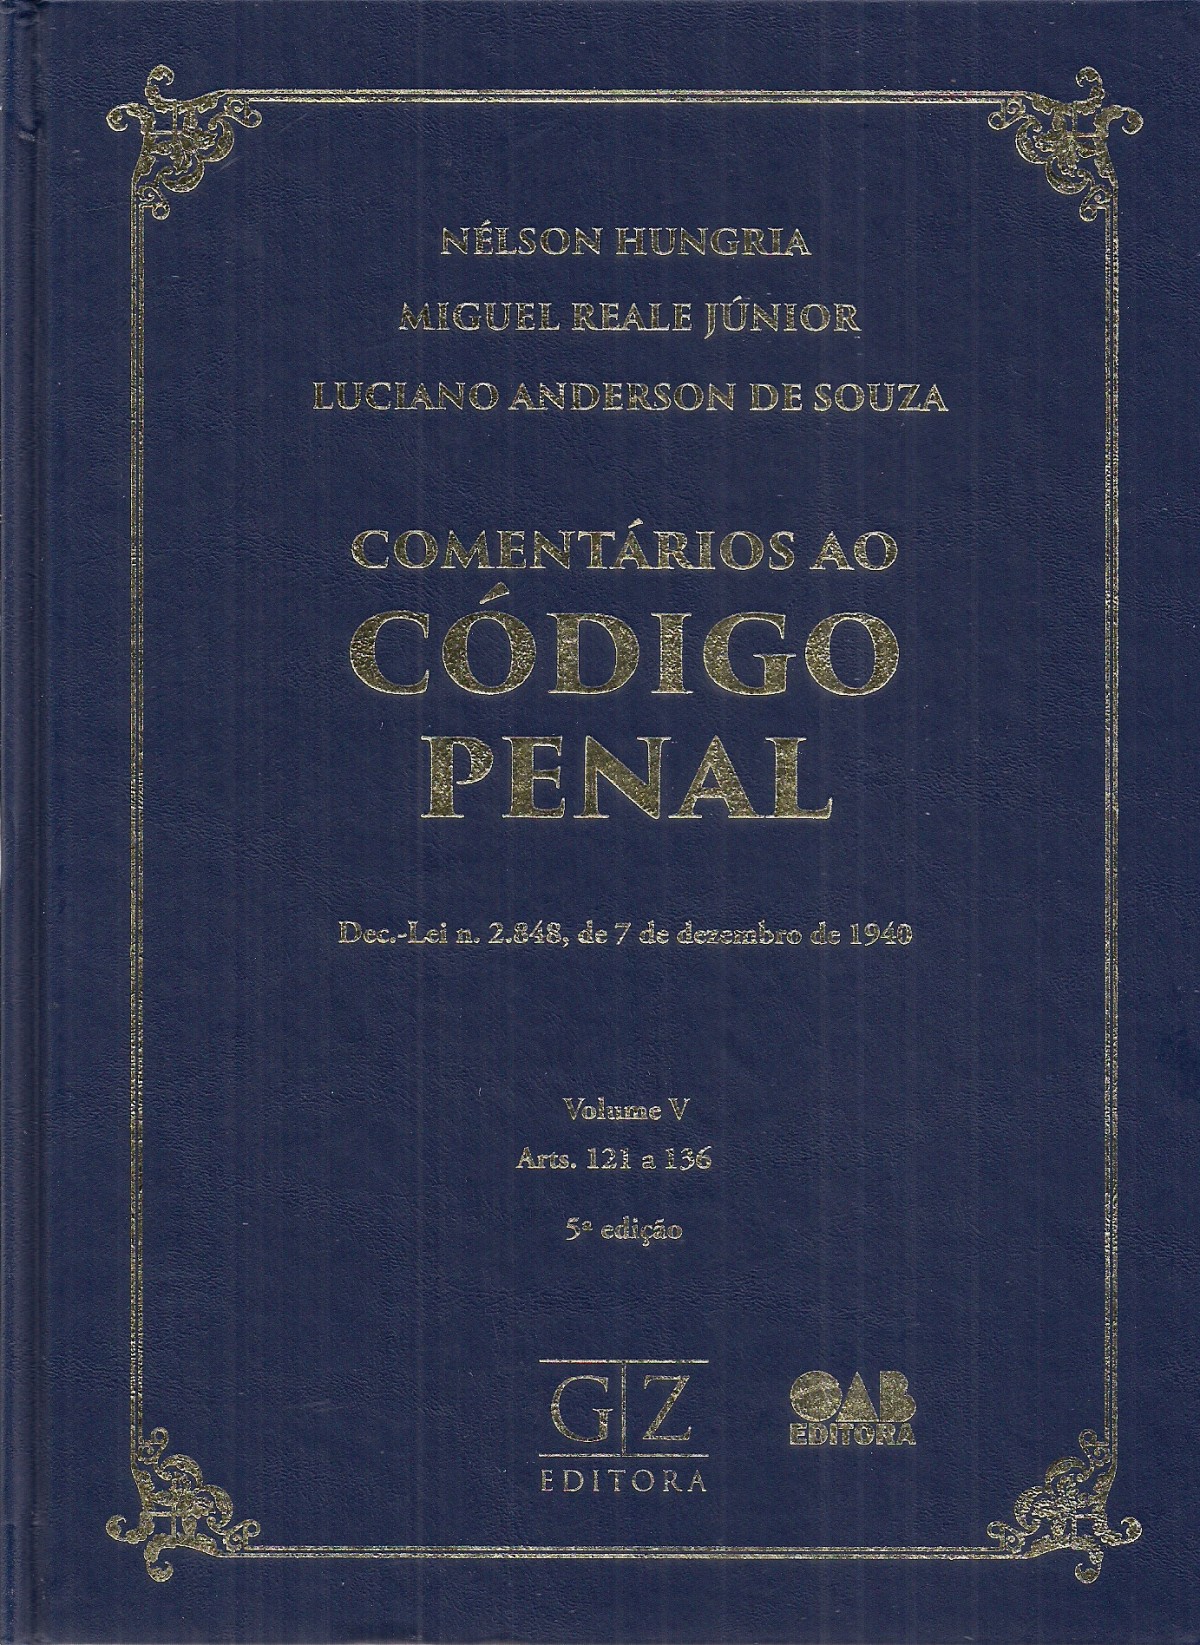 Foto 1 - Comentários ao Código Penal -Dec. - Lei n. 2.848, de 7 de dezembro de 1940 - Vol. V Arts. 121 a 136